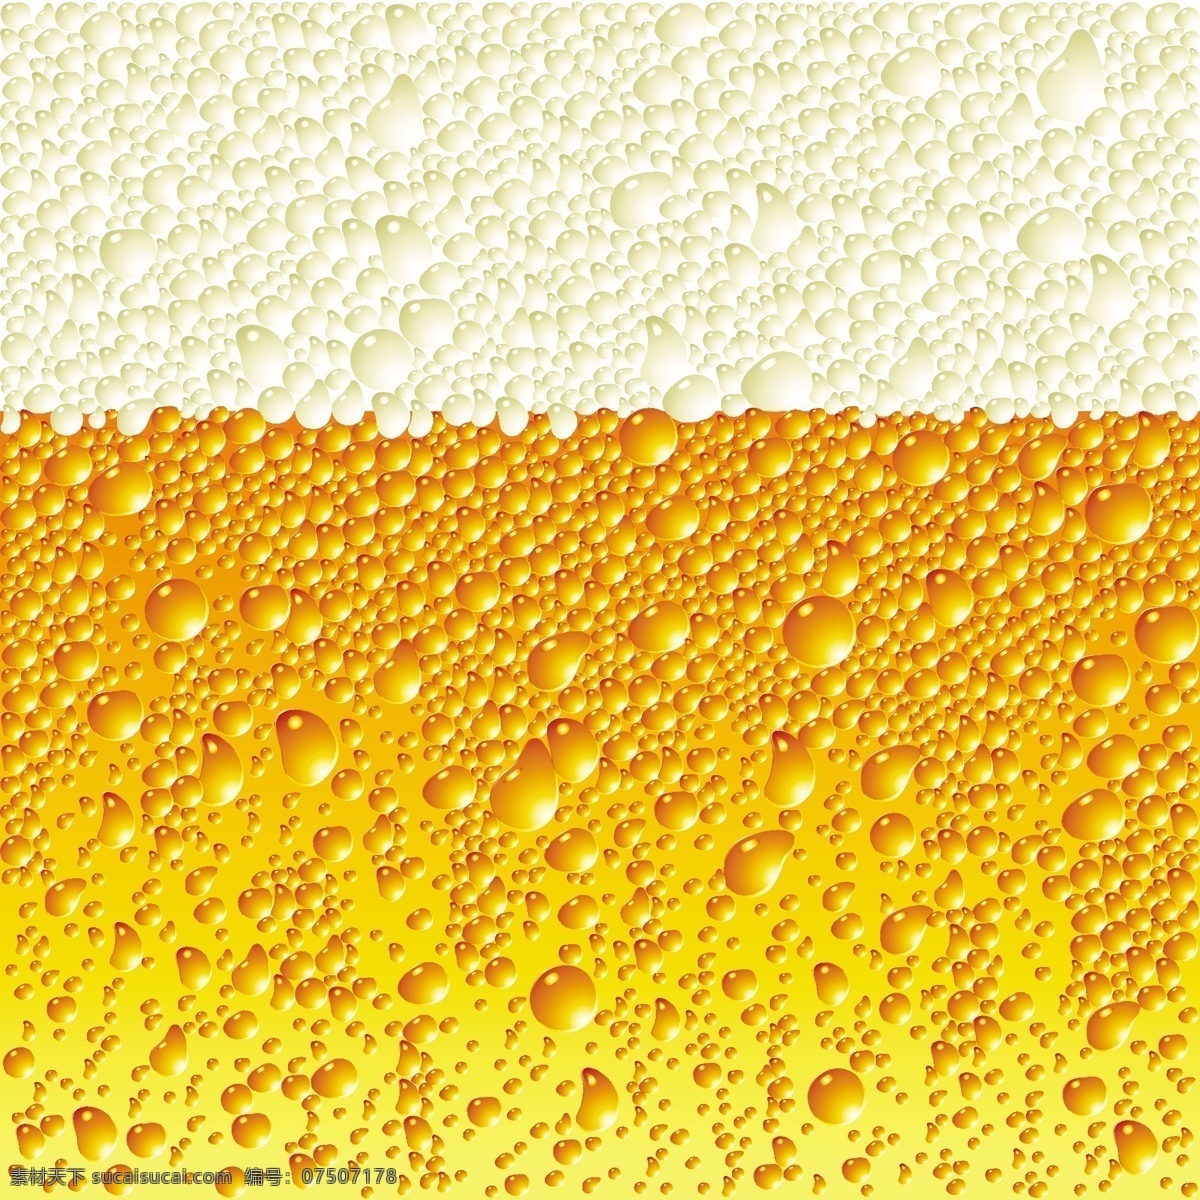 啤酒 系列 矢量 杯 背景 玻璃 酒 泡沫 啤酒杯 啤酒瓶 饮料 滴 矢量图 日常生活